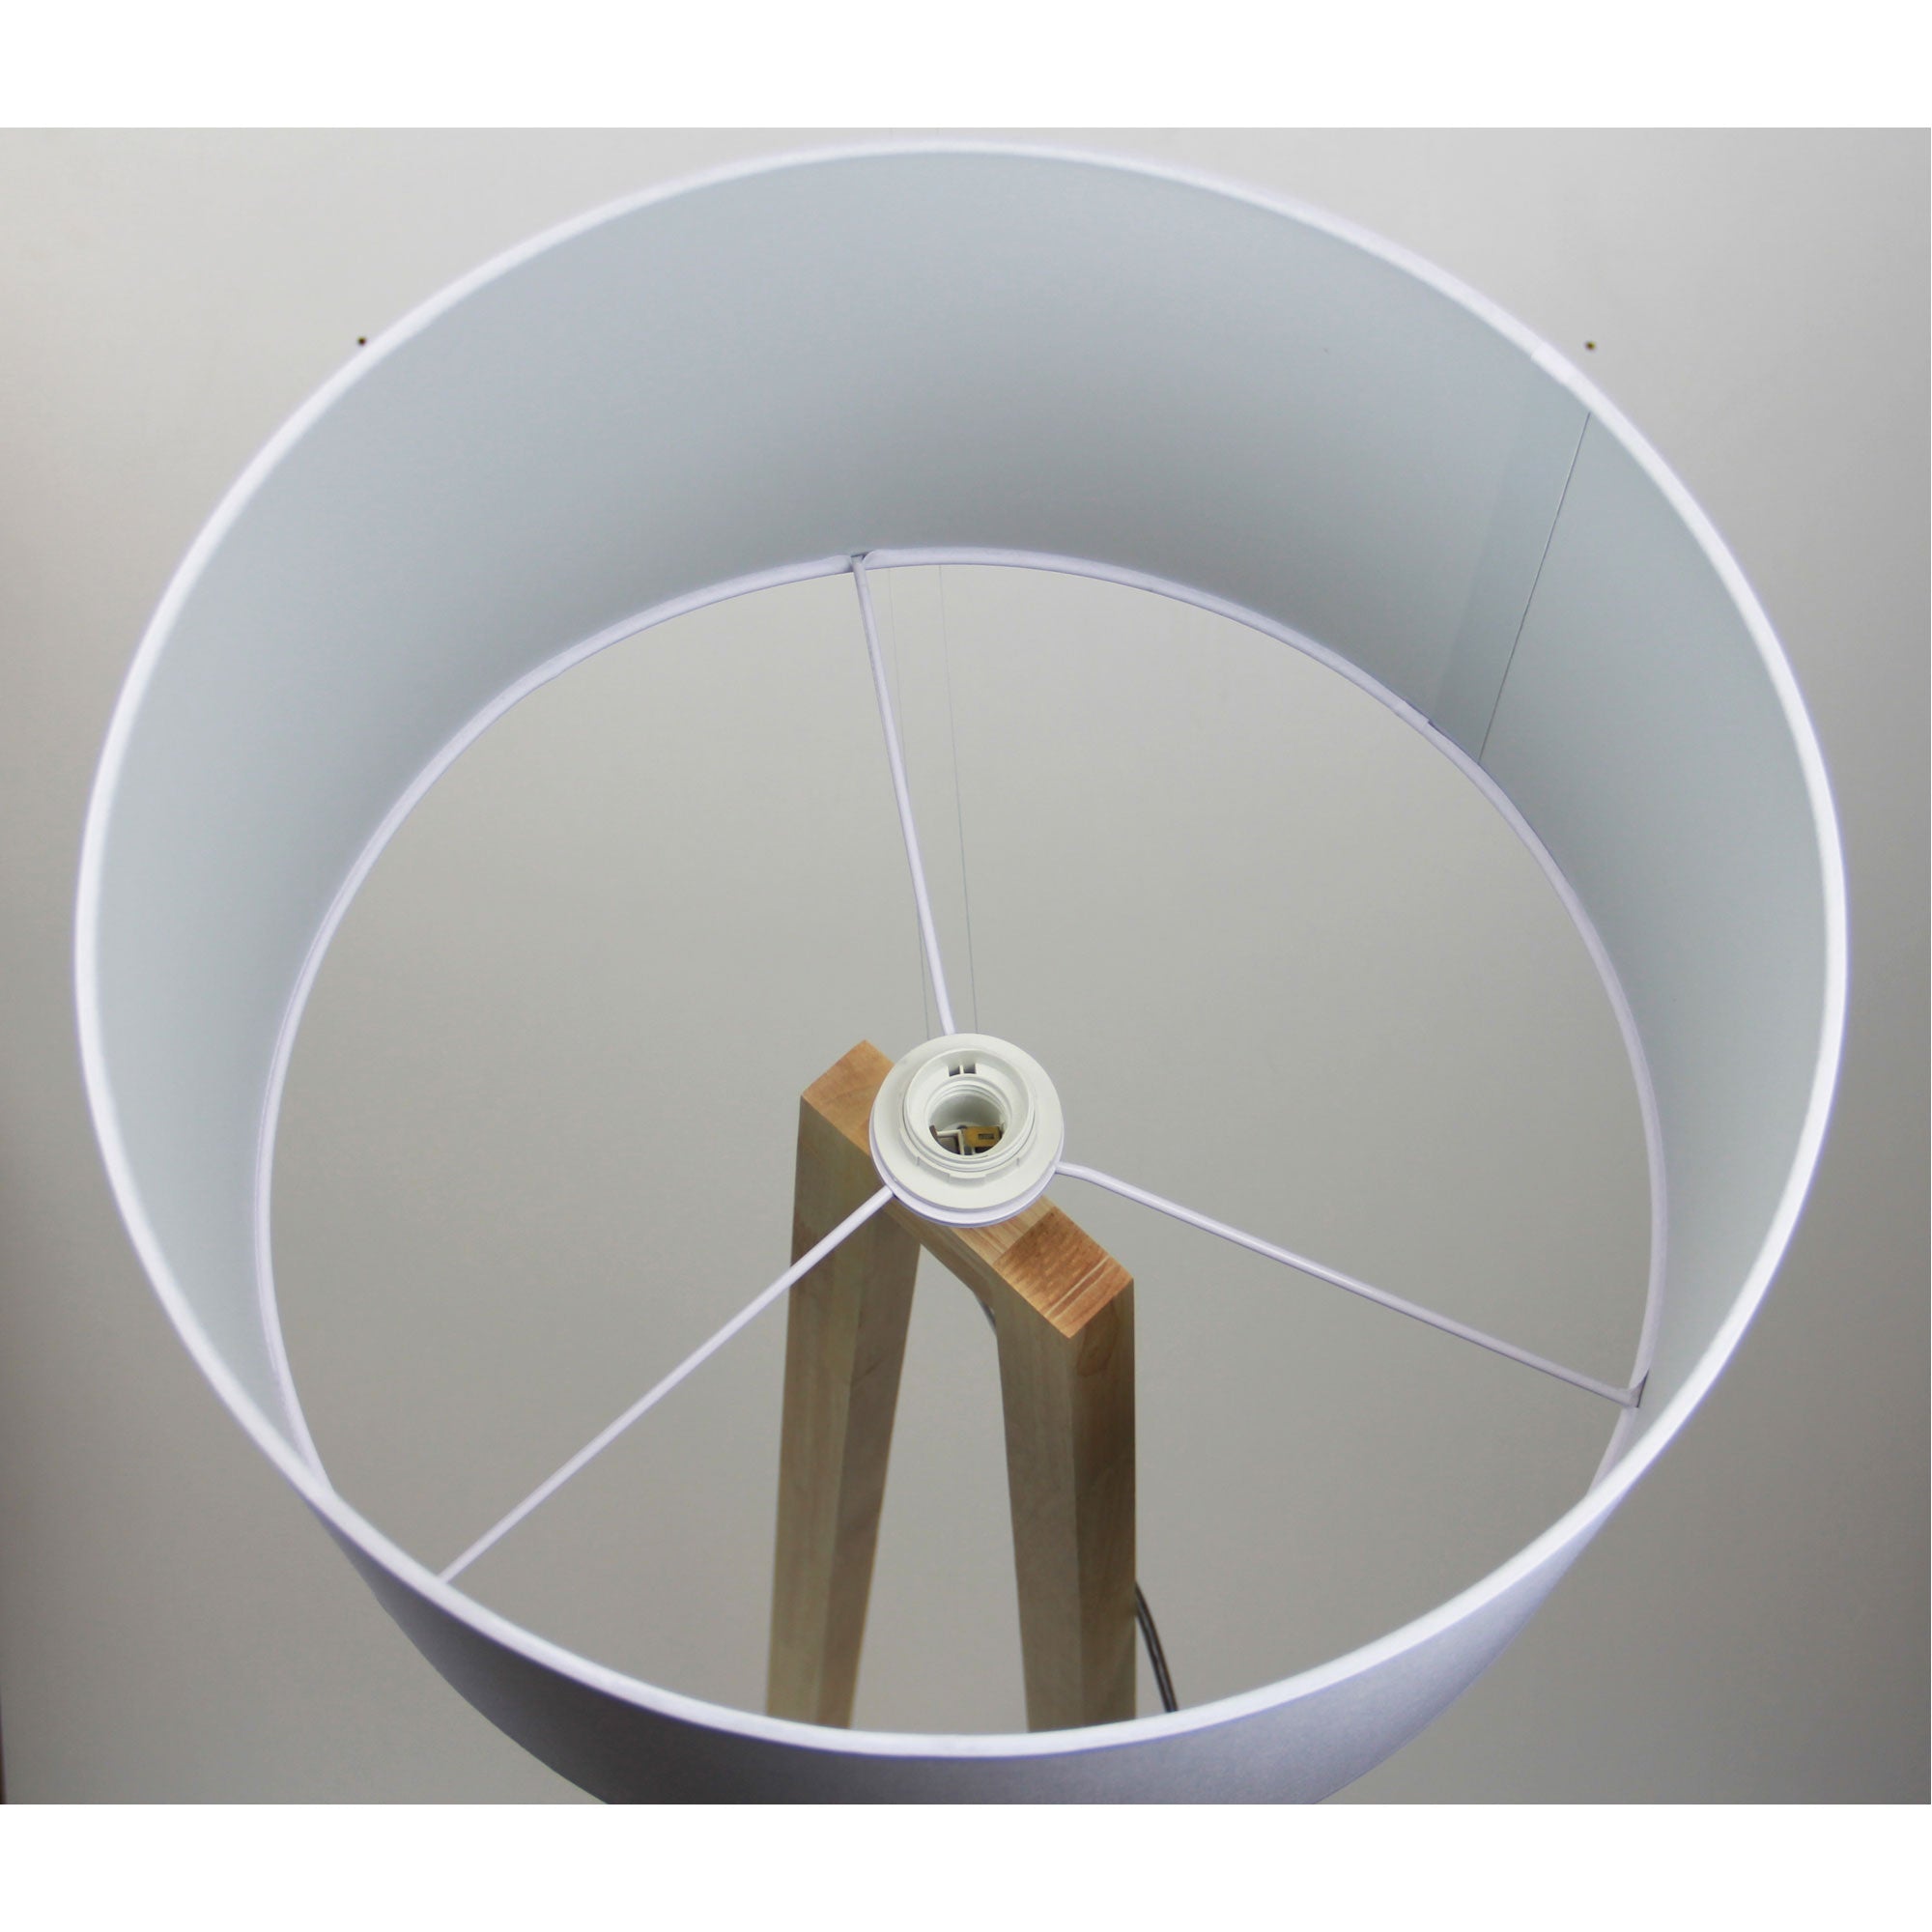 Edra 1 Light Floor Lamp Timber With White Cotton Shade - OL93533WH - Mases LightingOriel Lighting